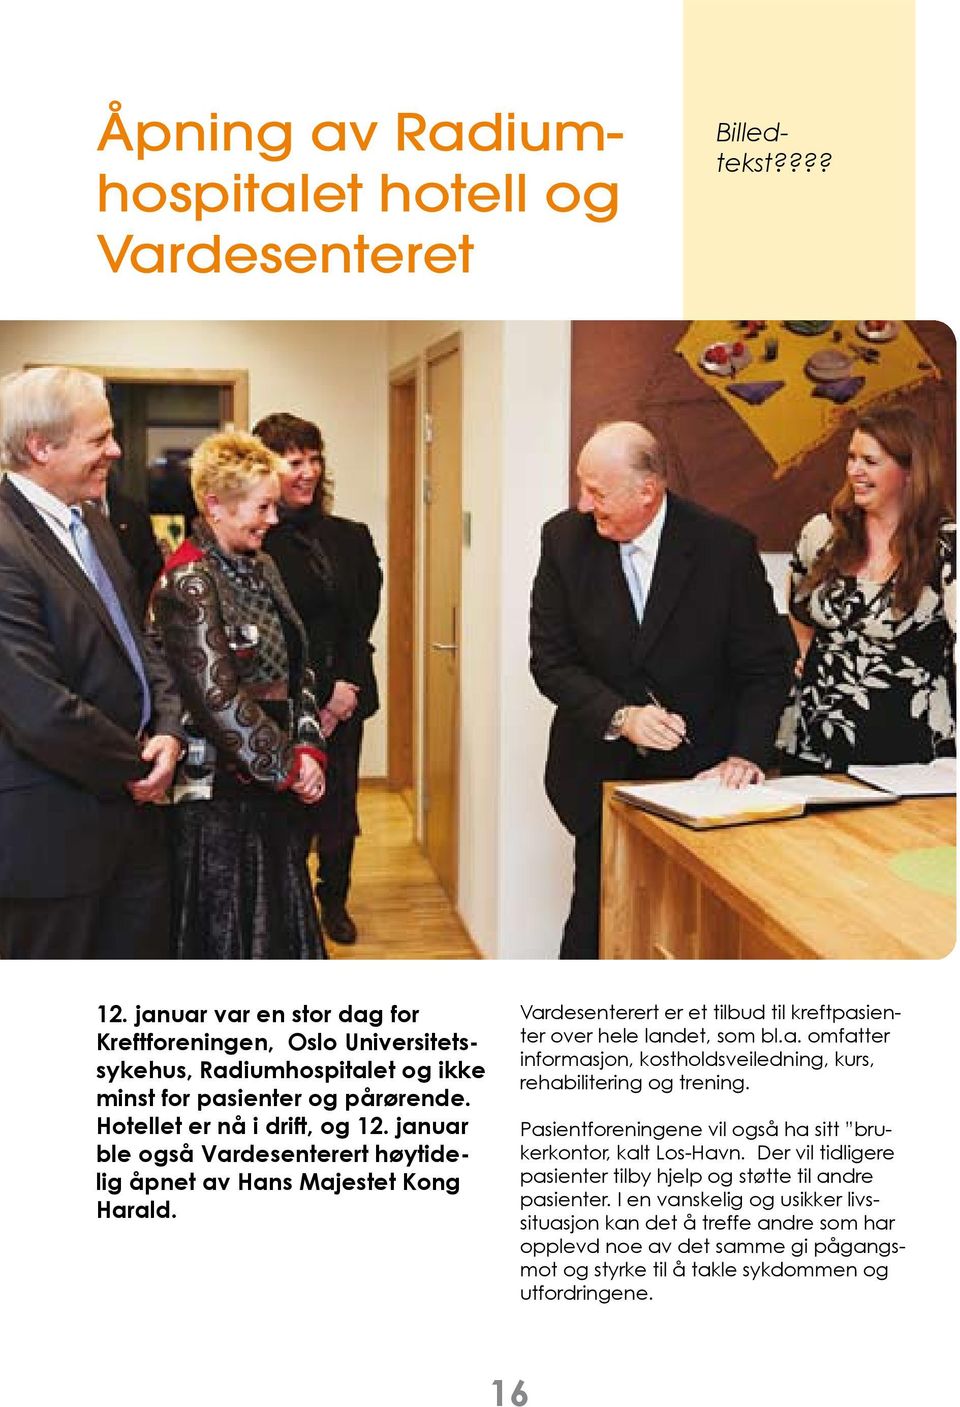 januar ble også Vardesenterert høytidelig åpnet av Hans Majestet Kong Harald. Vardesenterert er et tilbud til kreftpasienter over hele landet, som bl.a. omfatter informasjon, kostholdsveiledning, kurs, rehabilitering og trening.